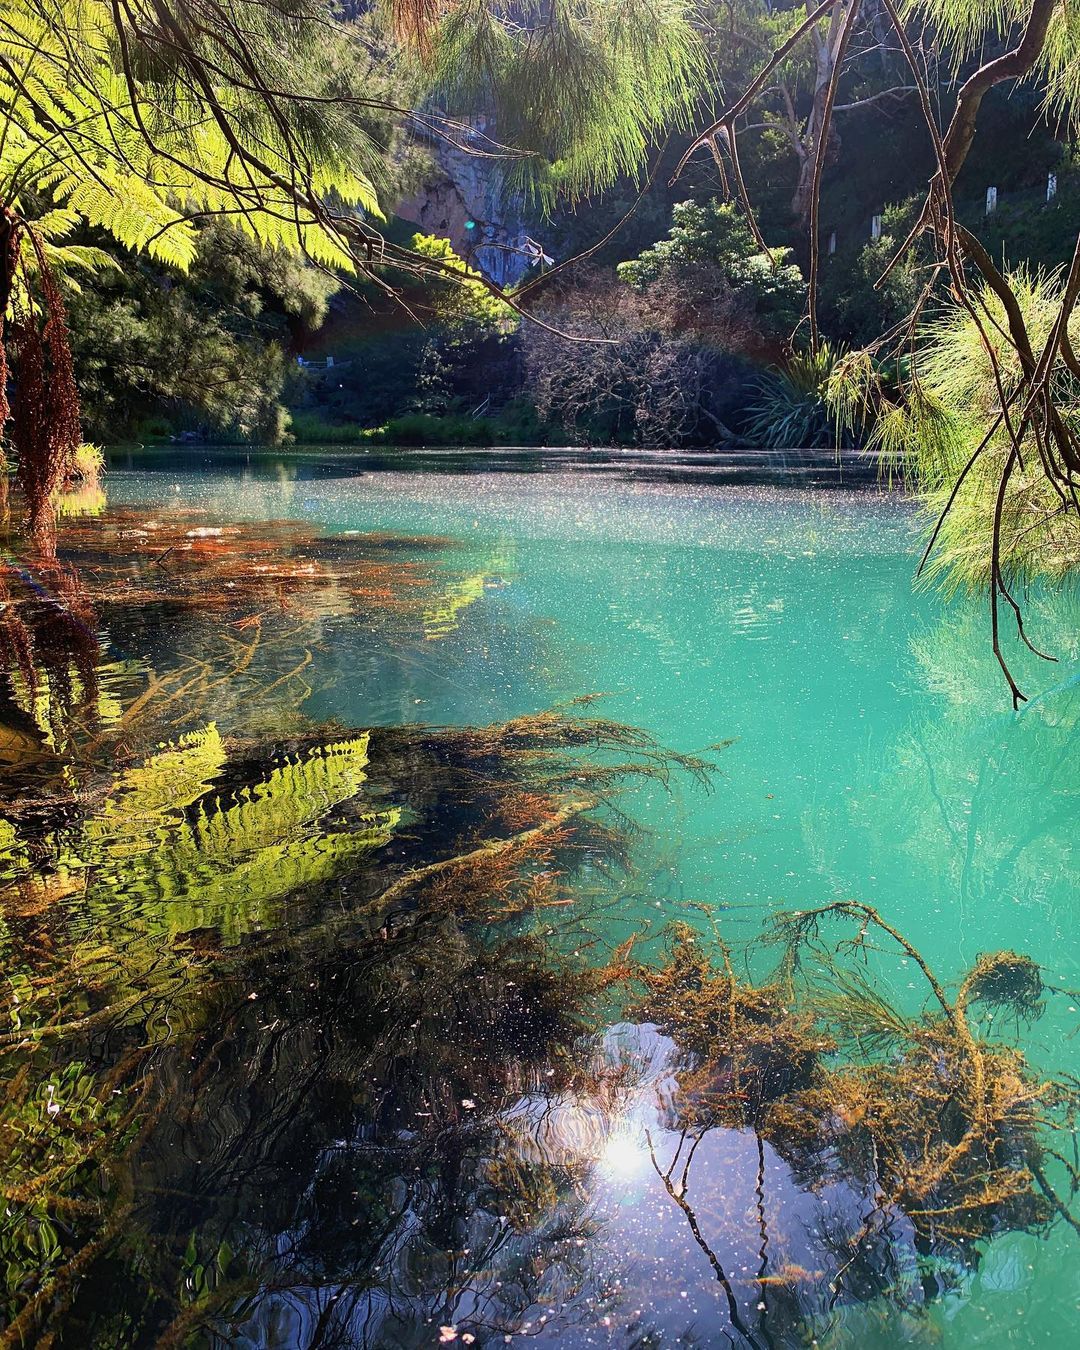 Австралийское сказочное озеро с бирюзовой водой